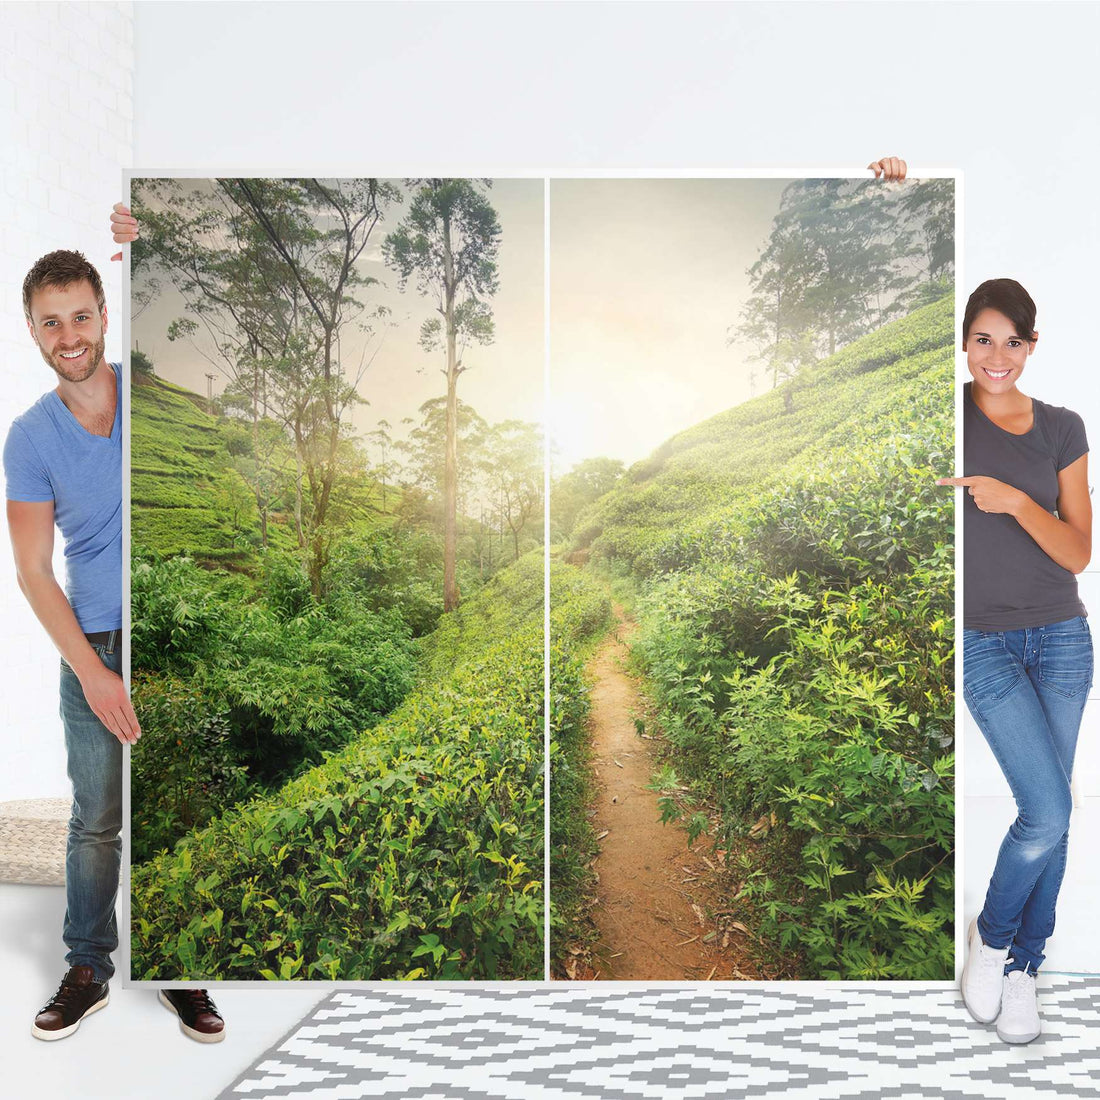 Möbel Klebefolie Green Tea Fields - IKEA Pax Schrank 201 cm Höhe - Schiebetür - Folie